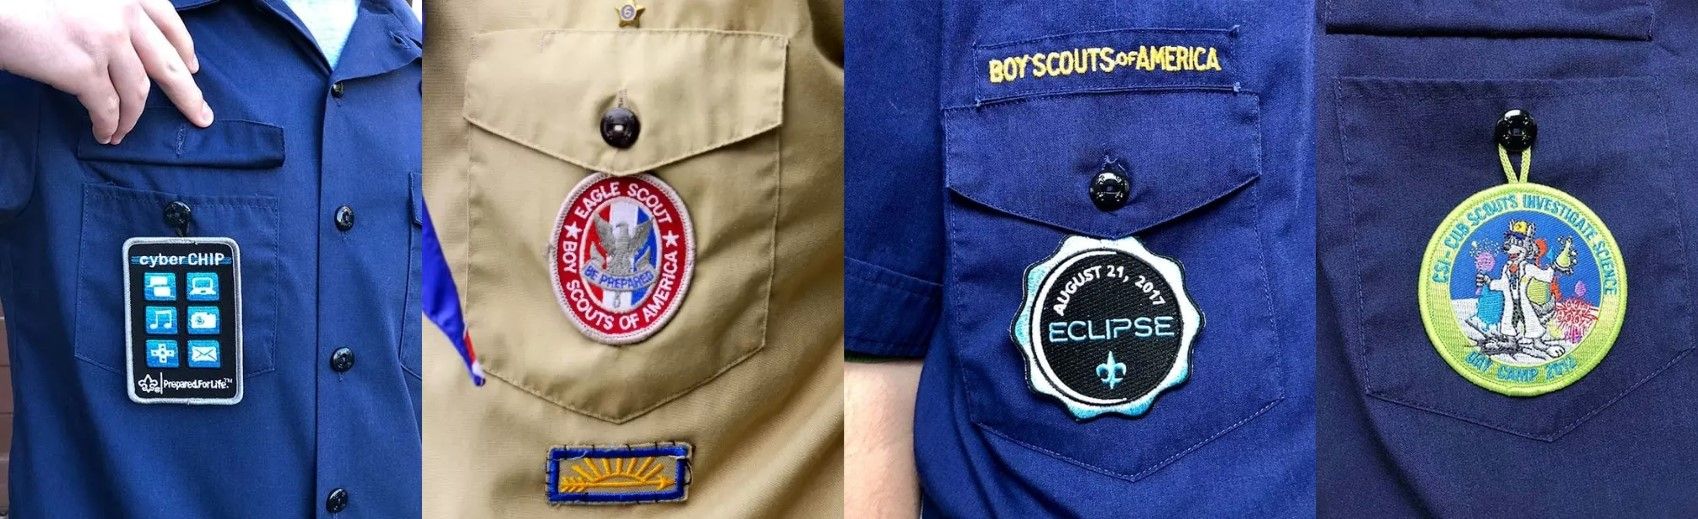 Toon uw reis en vaardigheden trots met badges netjes gerangschikt op uw scoutuniform.